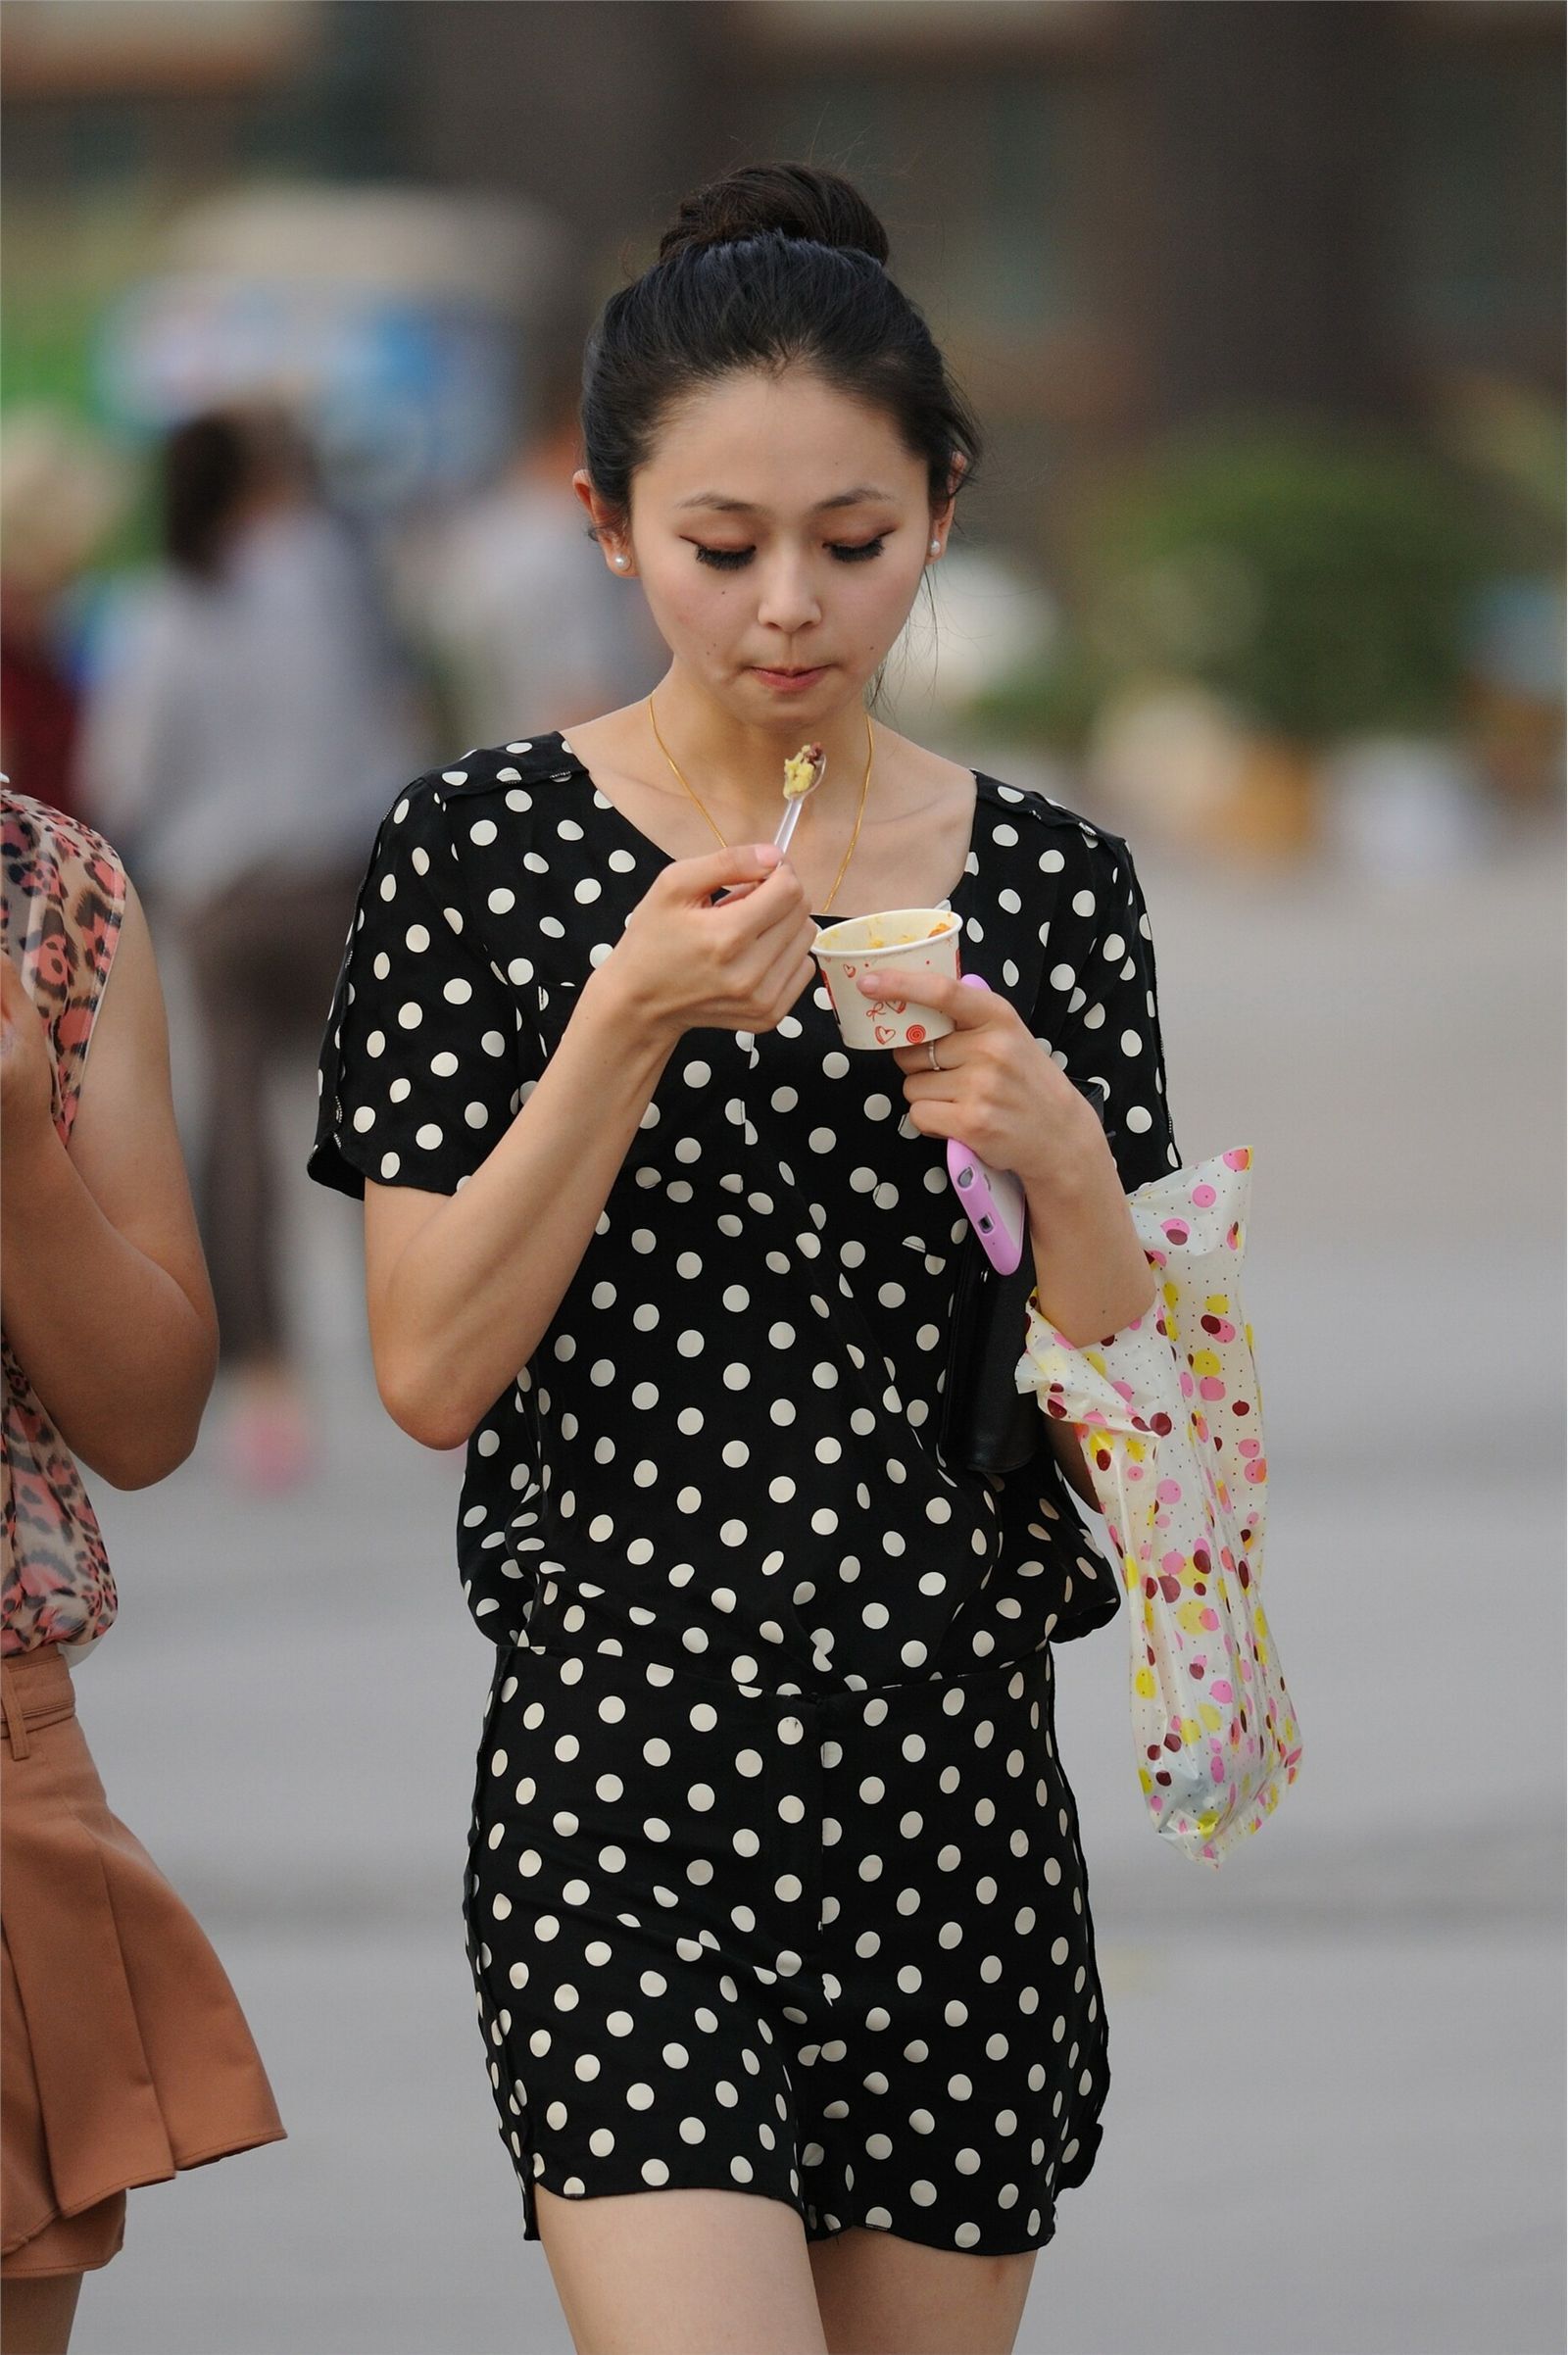 [户外街拍] 2013.10.01 俩个吃冰激凌的女孩